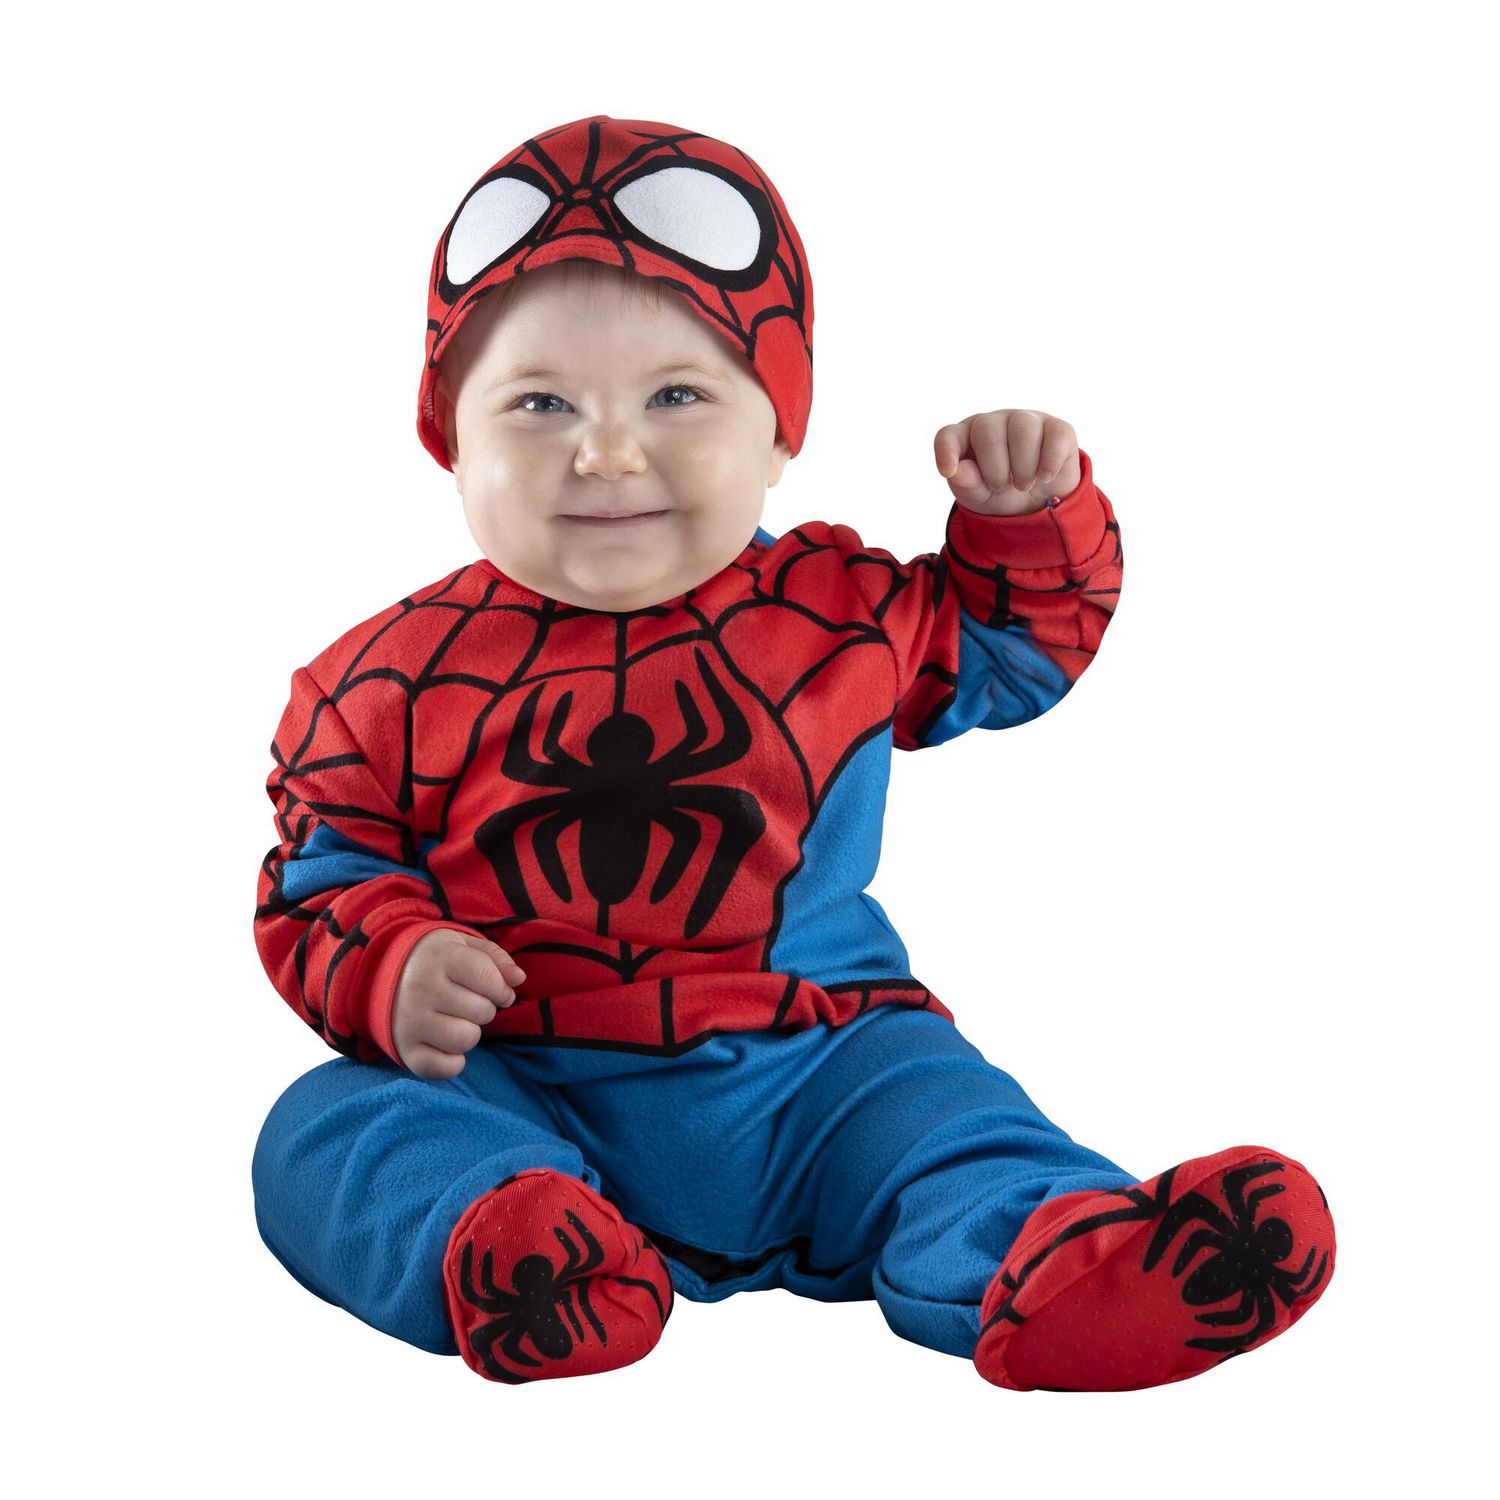 MARVEL'S SPIDER-MAN INFANT COSTUME - Combinaison Minky avec motif imprimé,  chaussons et bonnet de masque 